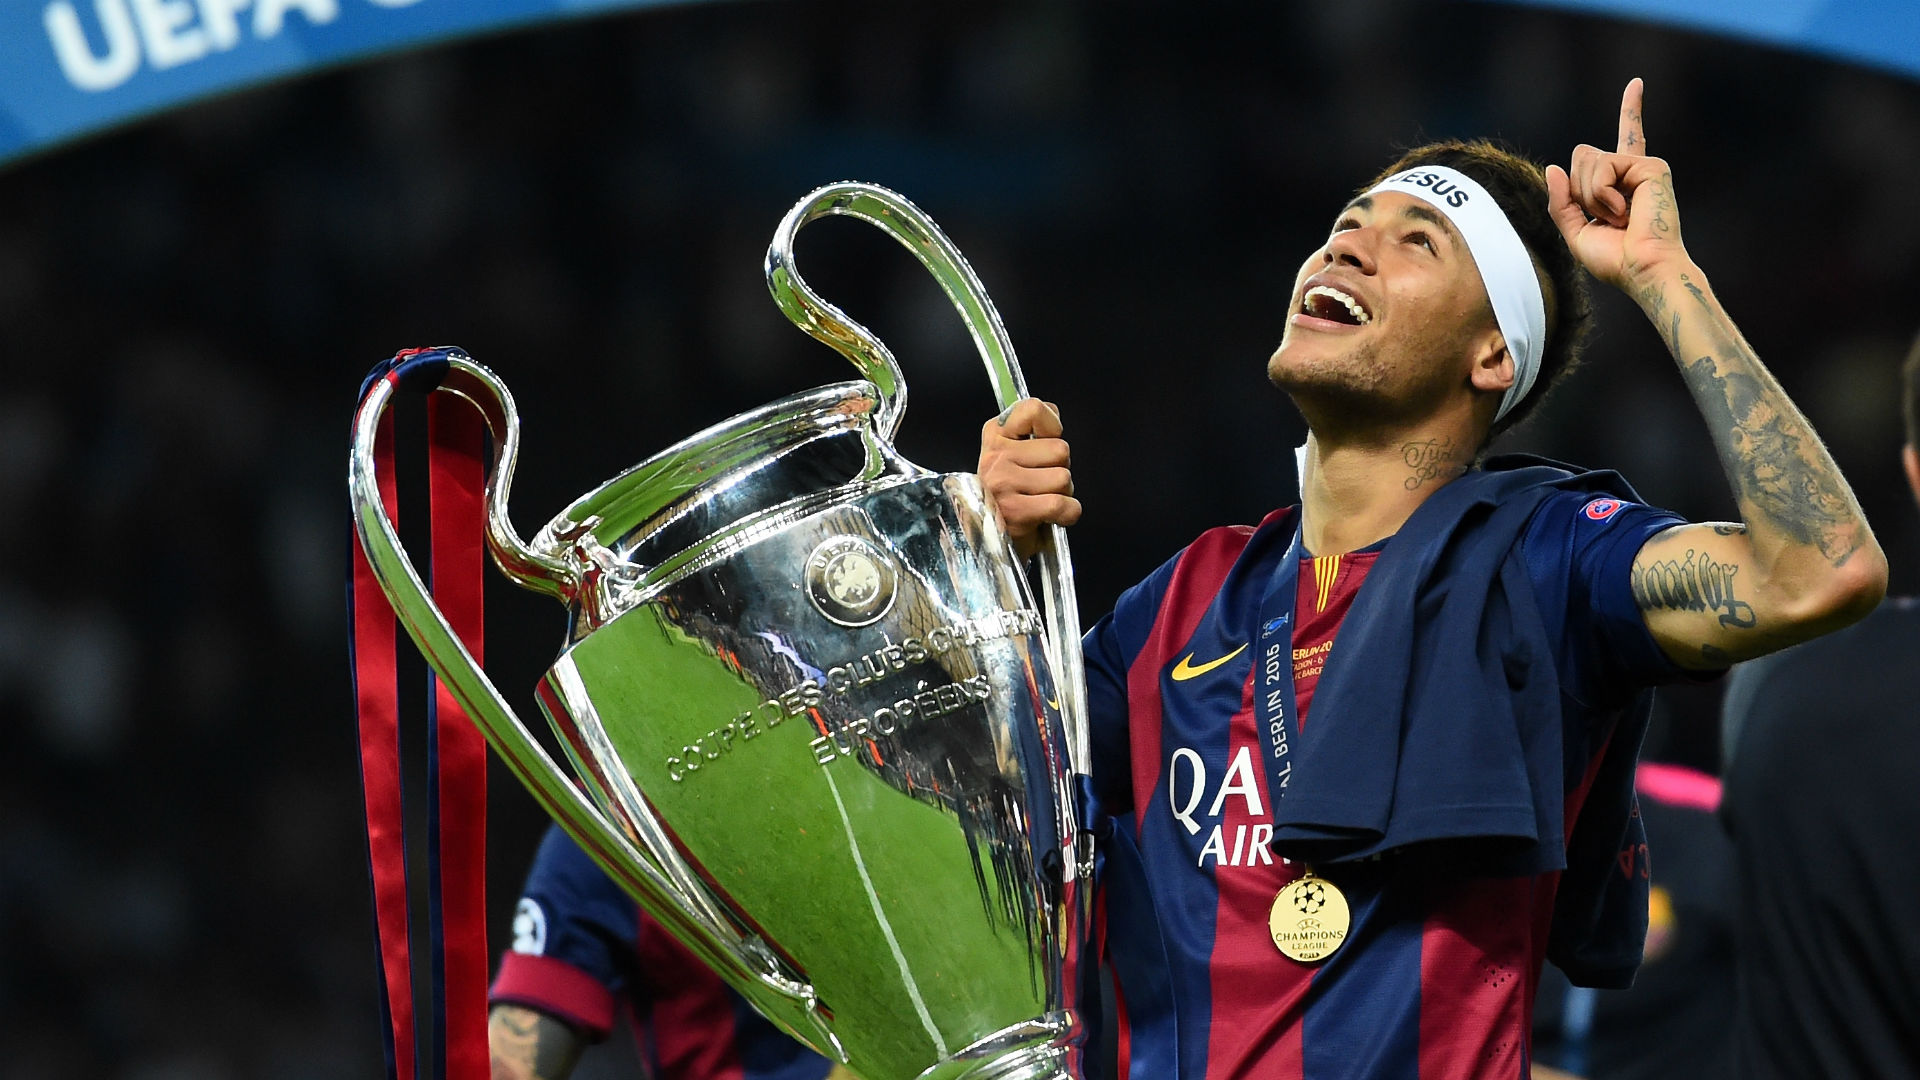 Resultado de imagen para Neymar champions league